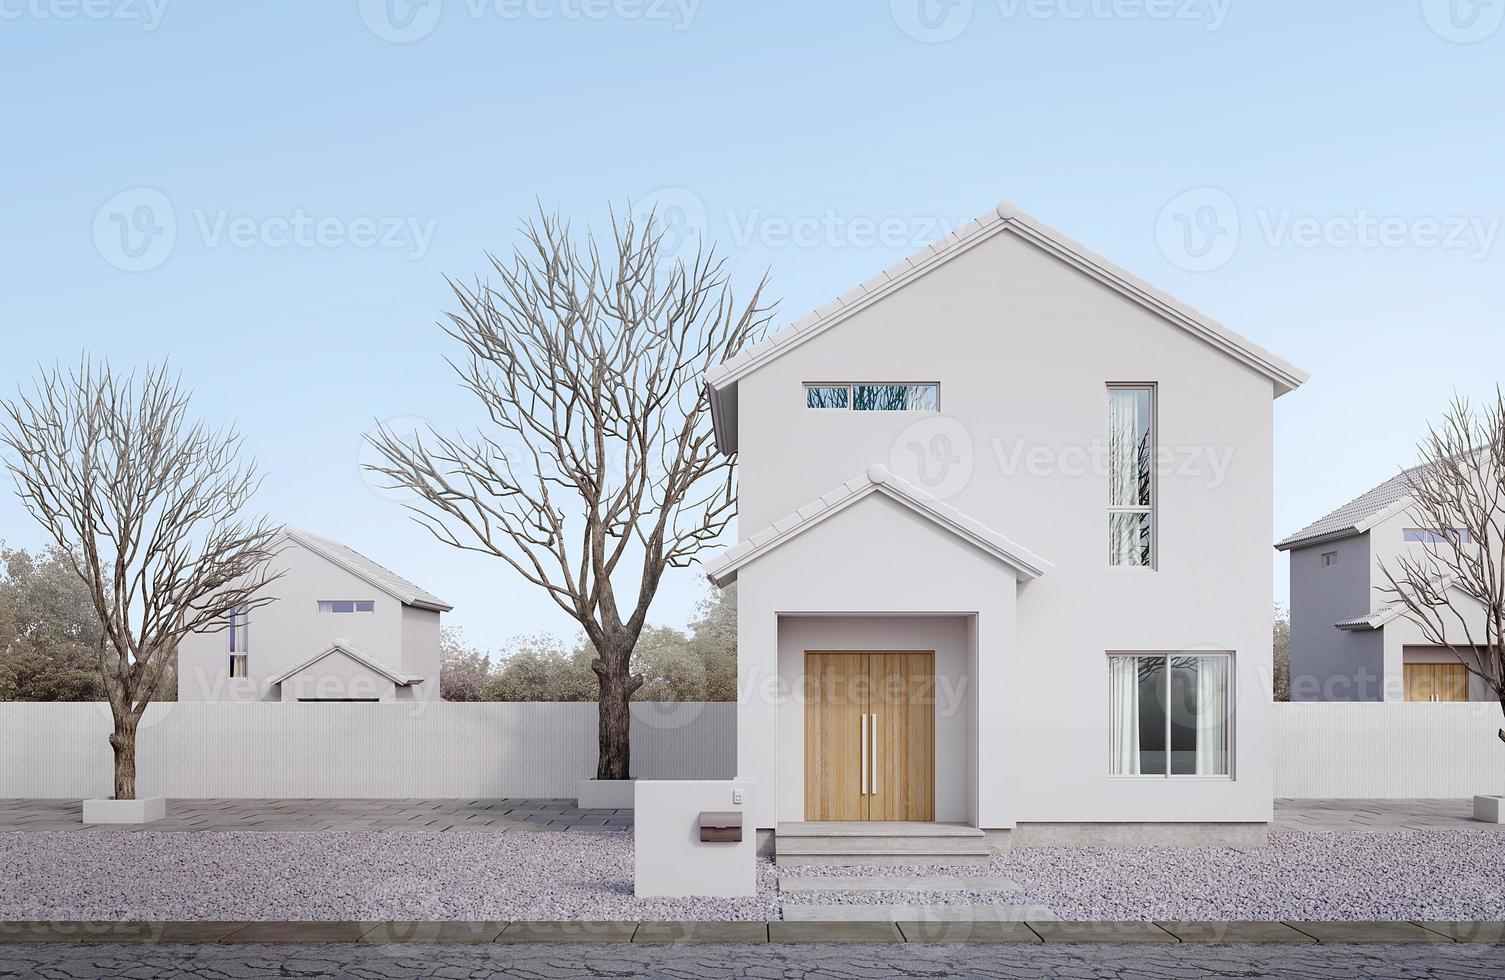 esterno della casa bianca in stile minimal.tetto a due falde, finestra di vetro e porta di legno con cielo blu.rendering 3d foto